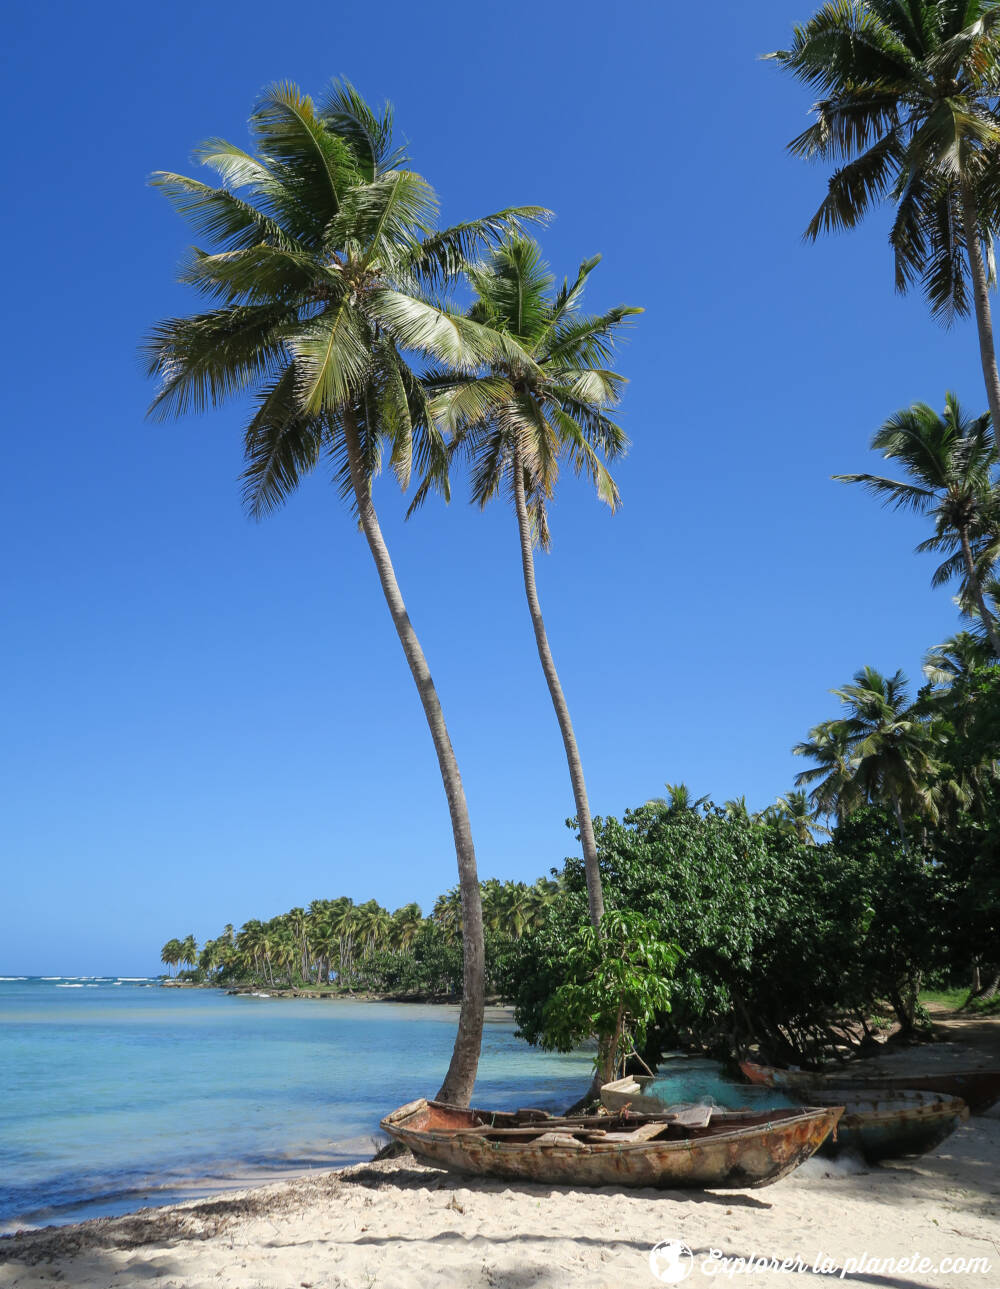 La plage de Las Galeras en République dominicaine avec deux palmiers et un bateau de pêcheur